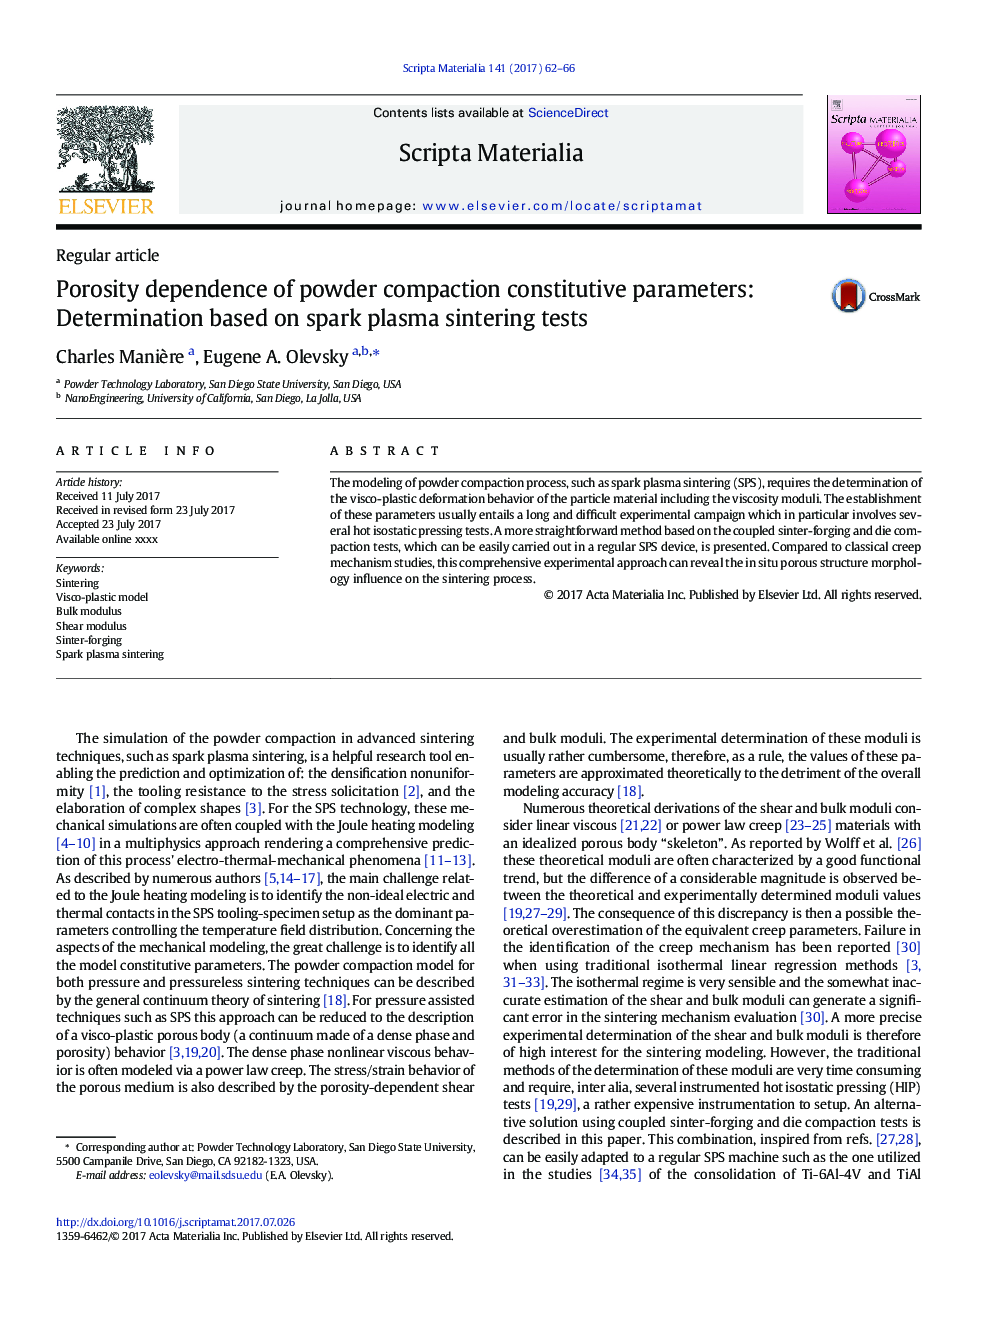 وابستگی زبری به پارامترهای سازنده پودر تراکم پودر: تعیین بر اساس آزمون های پخت اسپرم های جرقه 